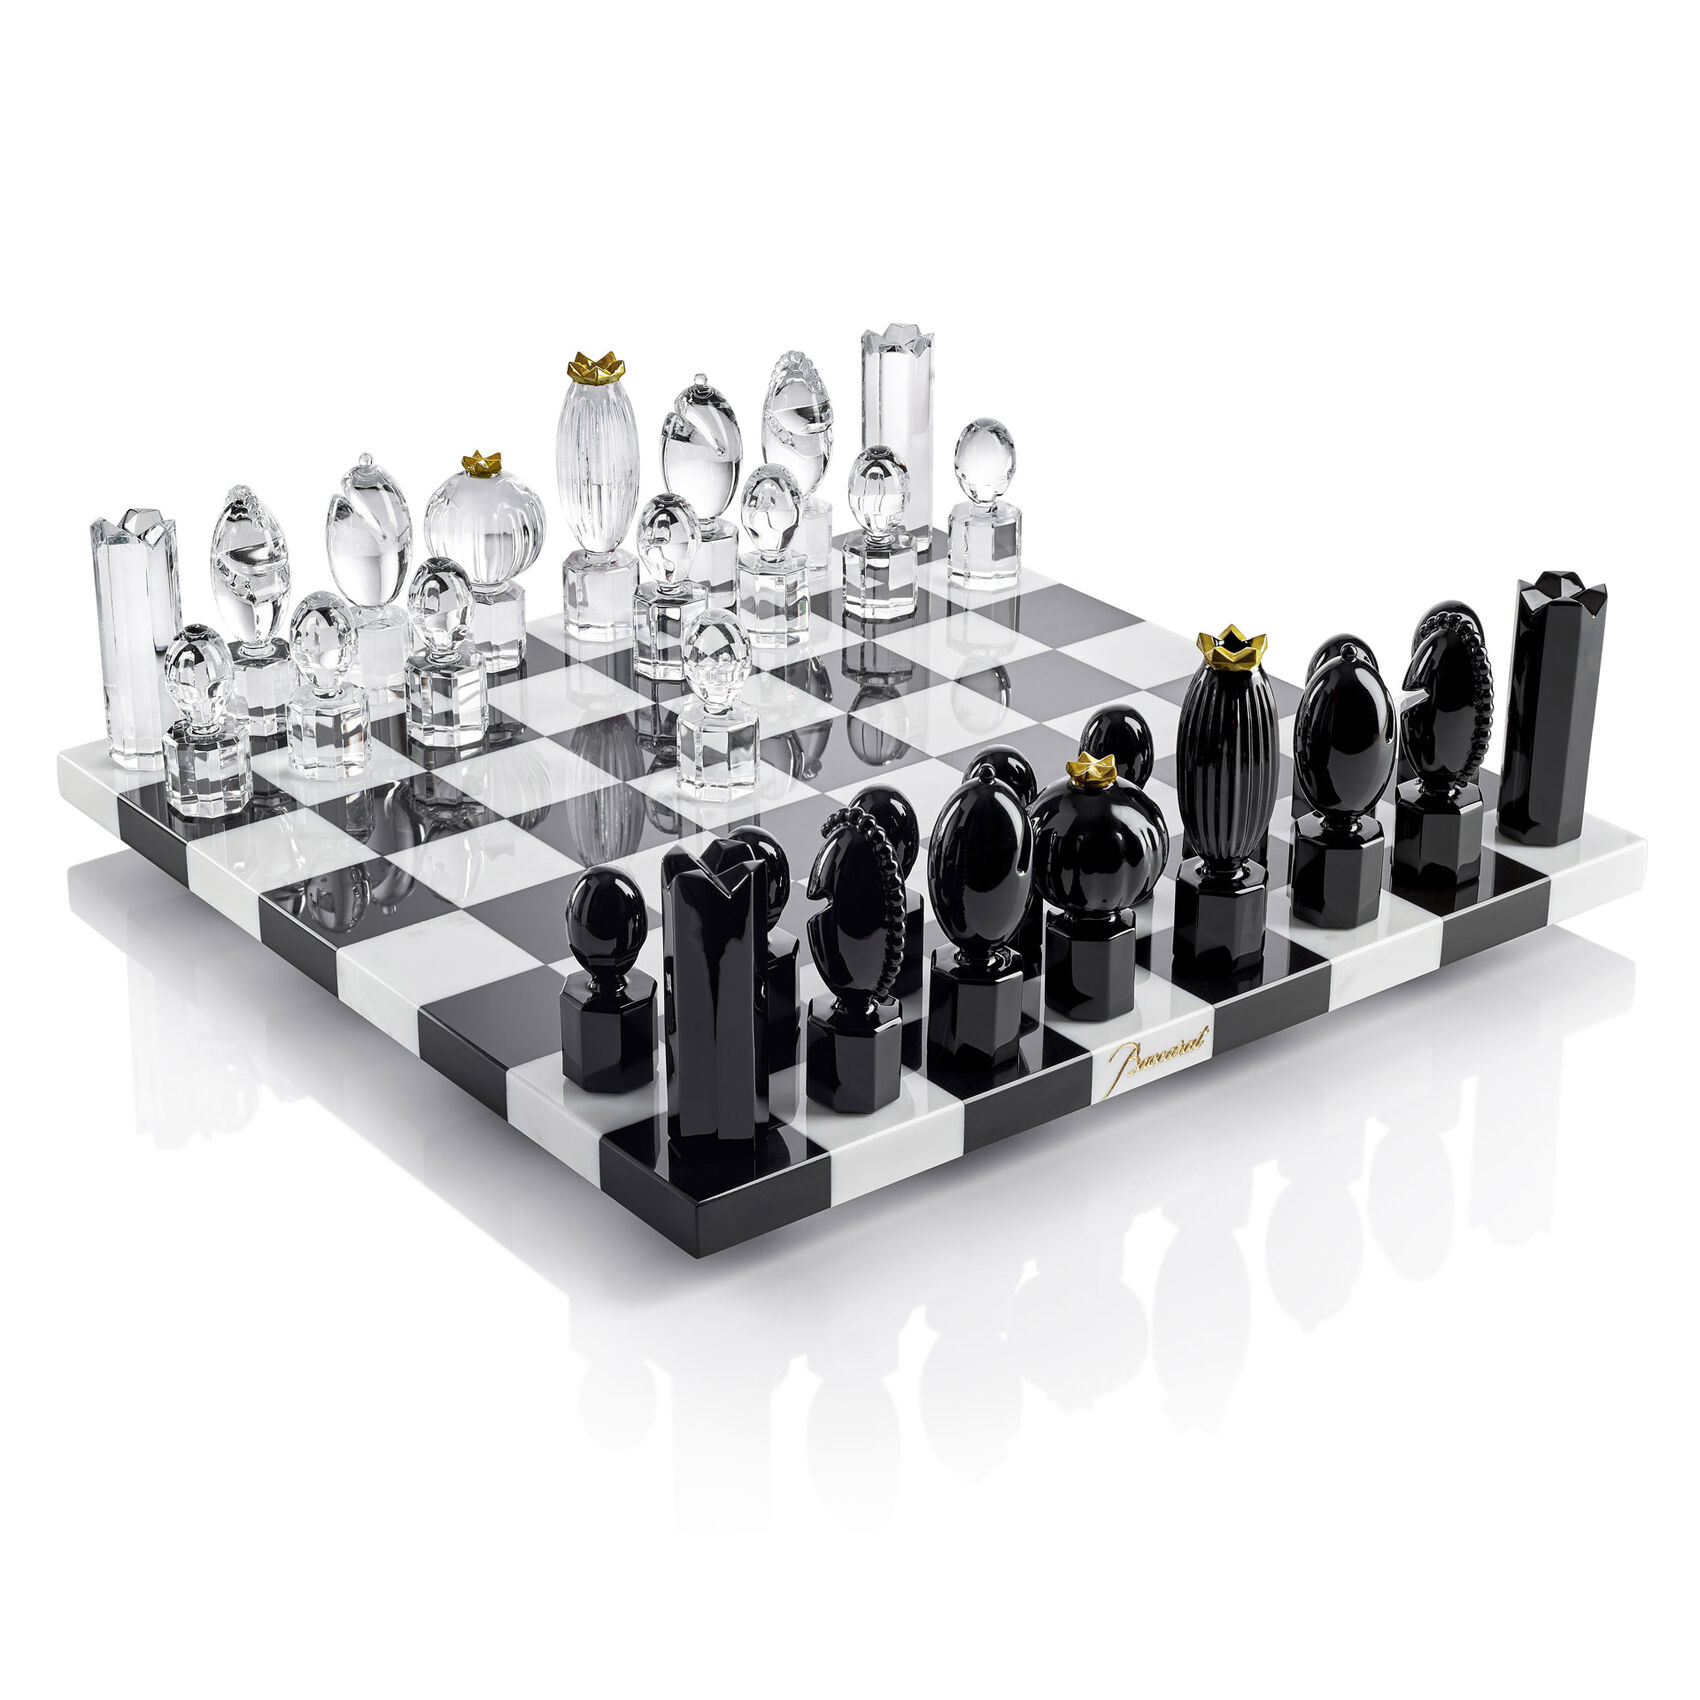 Chess Game by MAarcel Wanders Studio